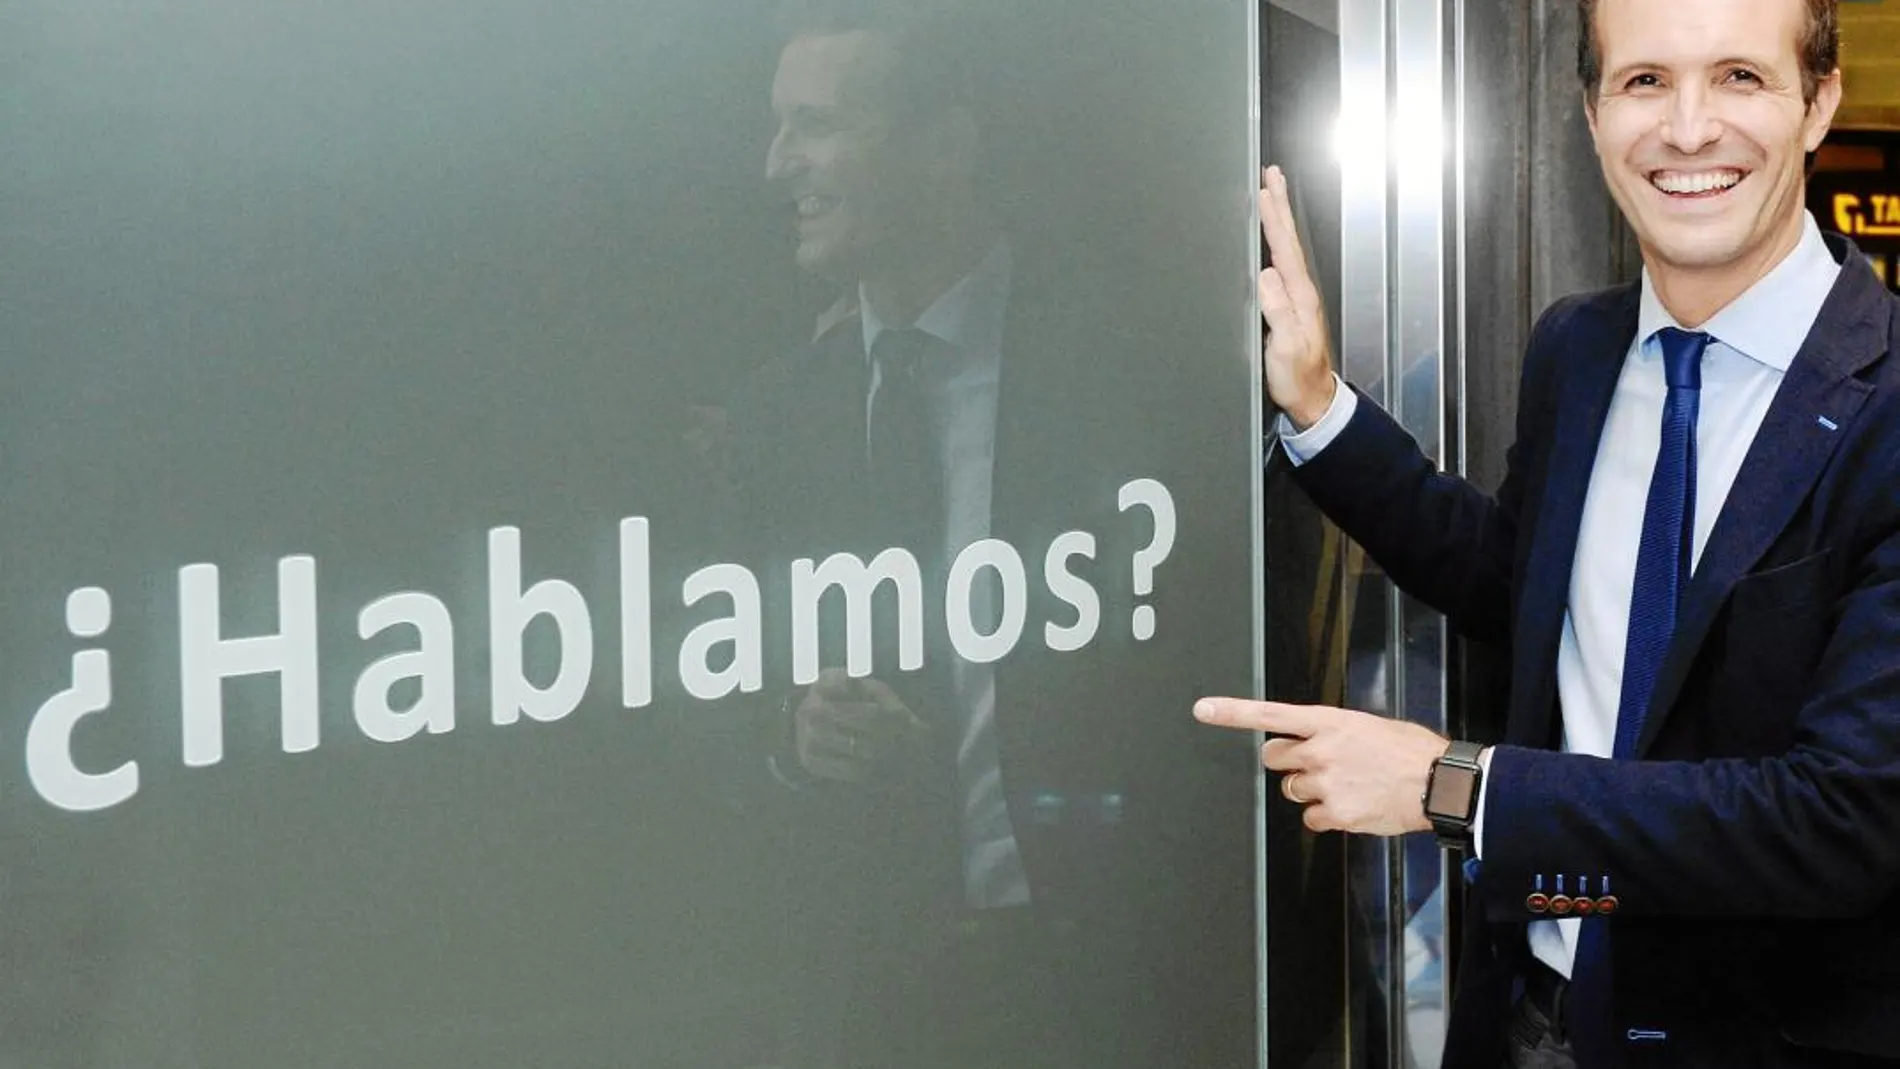 El candidato a la presidencia del Partido Popular, Pablo Casado, posa ayer junto a una publicidad de un establecimiento comercial tras el encuentro con compromisarios en Valladolid